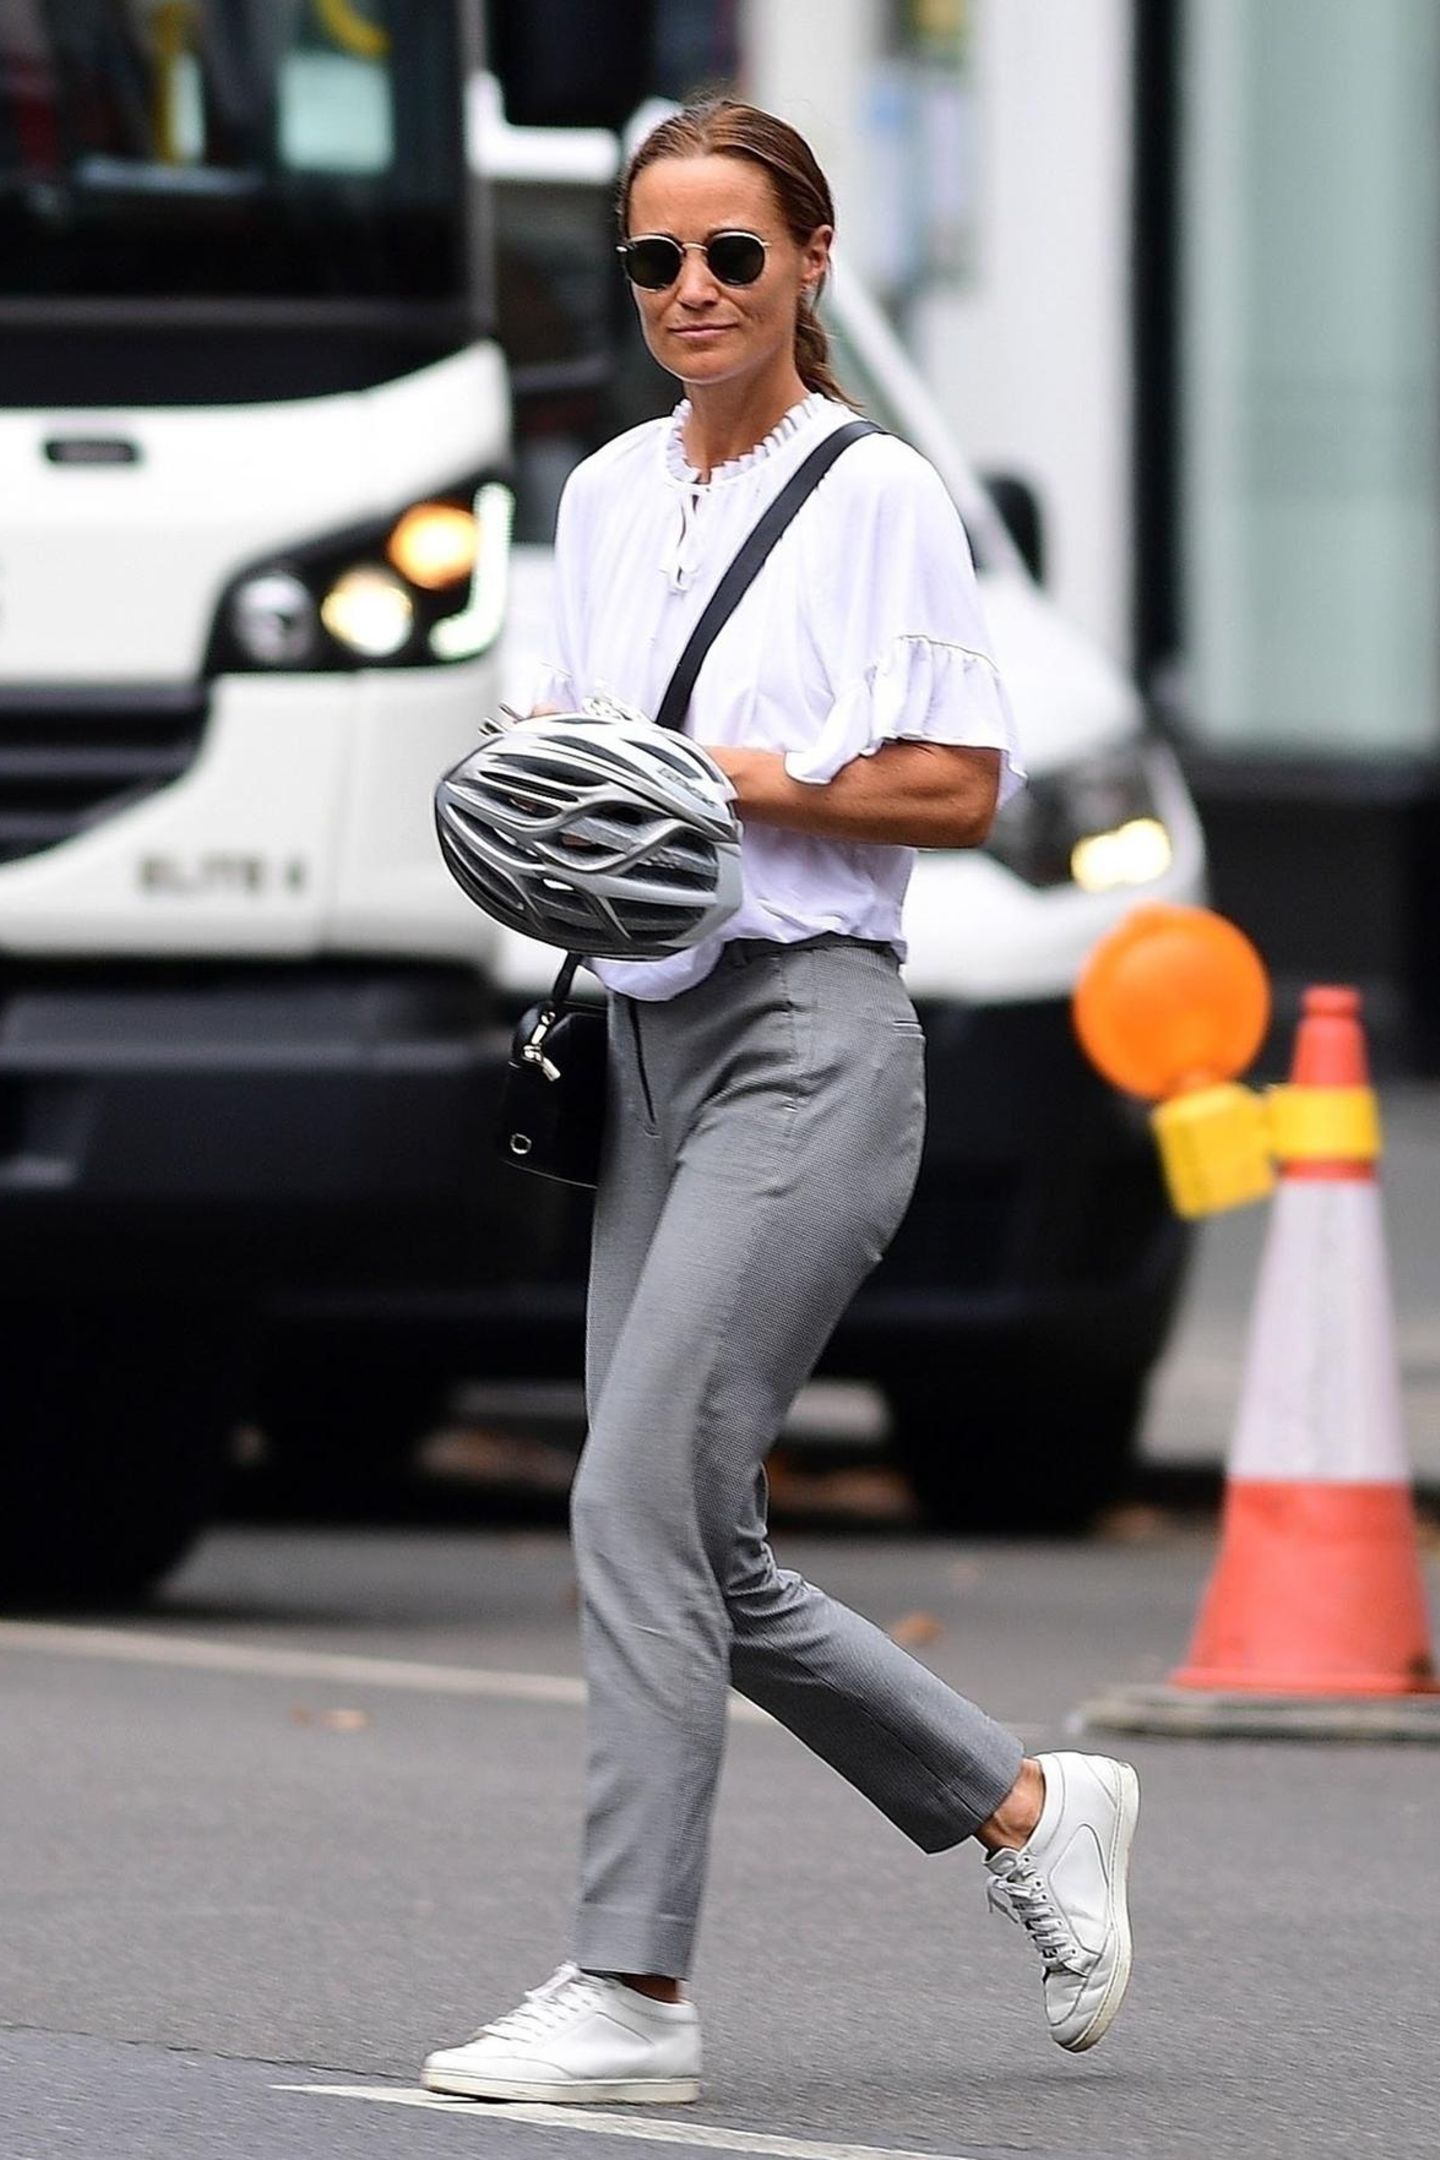 Weiße Bluse, graue Anzughose, weiße Sneaker, schwarze Accessoires: So lässig ist Pippa Middleton in Chelsea unterwegs. Dabei darf ein besonderes Accessoire natürlich nicht fehlen: Ihr Fahrradhelm. Die leidenschaftliche Radlerin setzt immer auf Sicherheit statt Eitelkeit - vorbildlich!